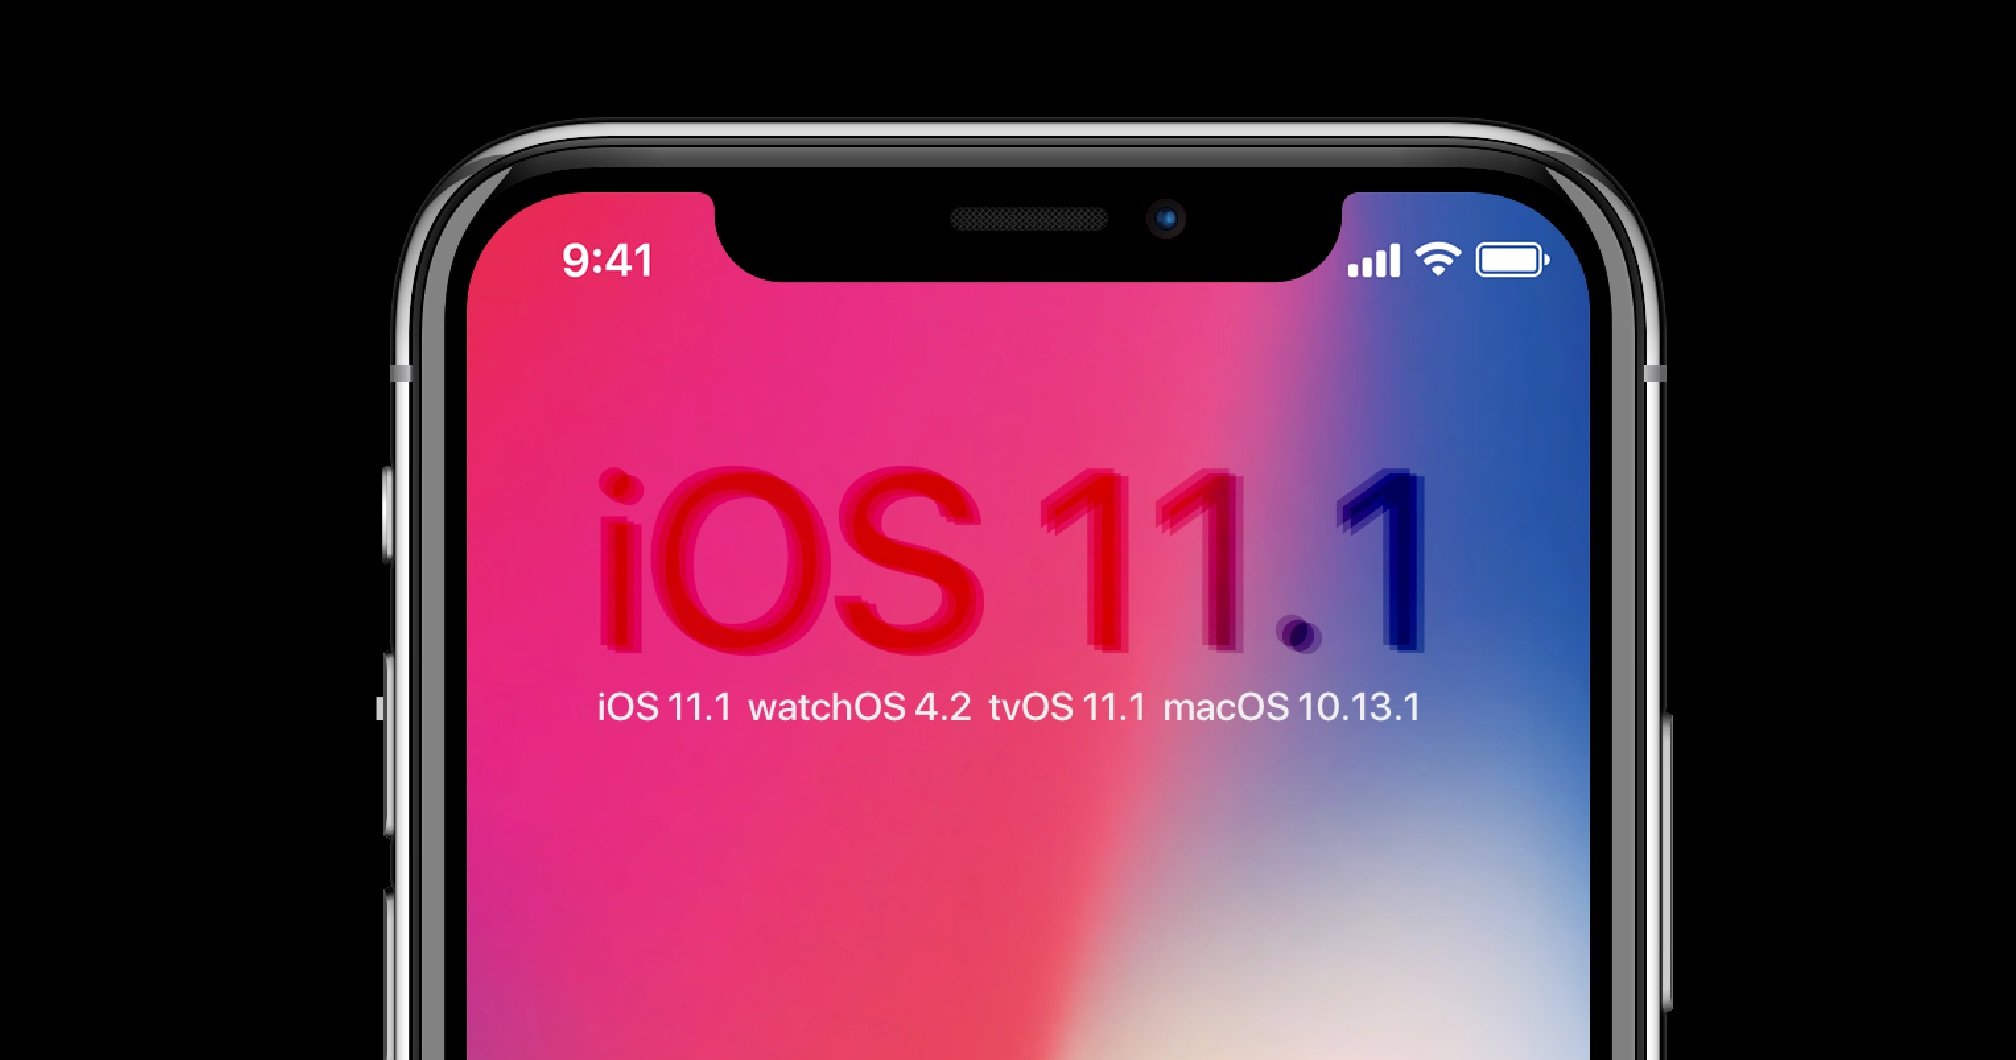 Update: iOS 11.1, watchOS 4.1, tvOS 11.1 & macOS High Sierra 10.13.1 6